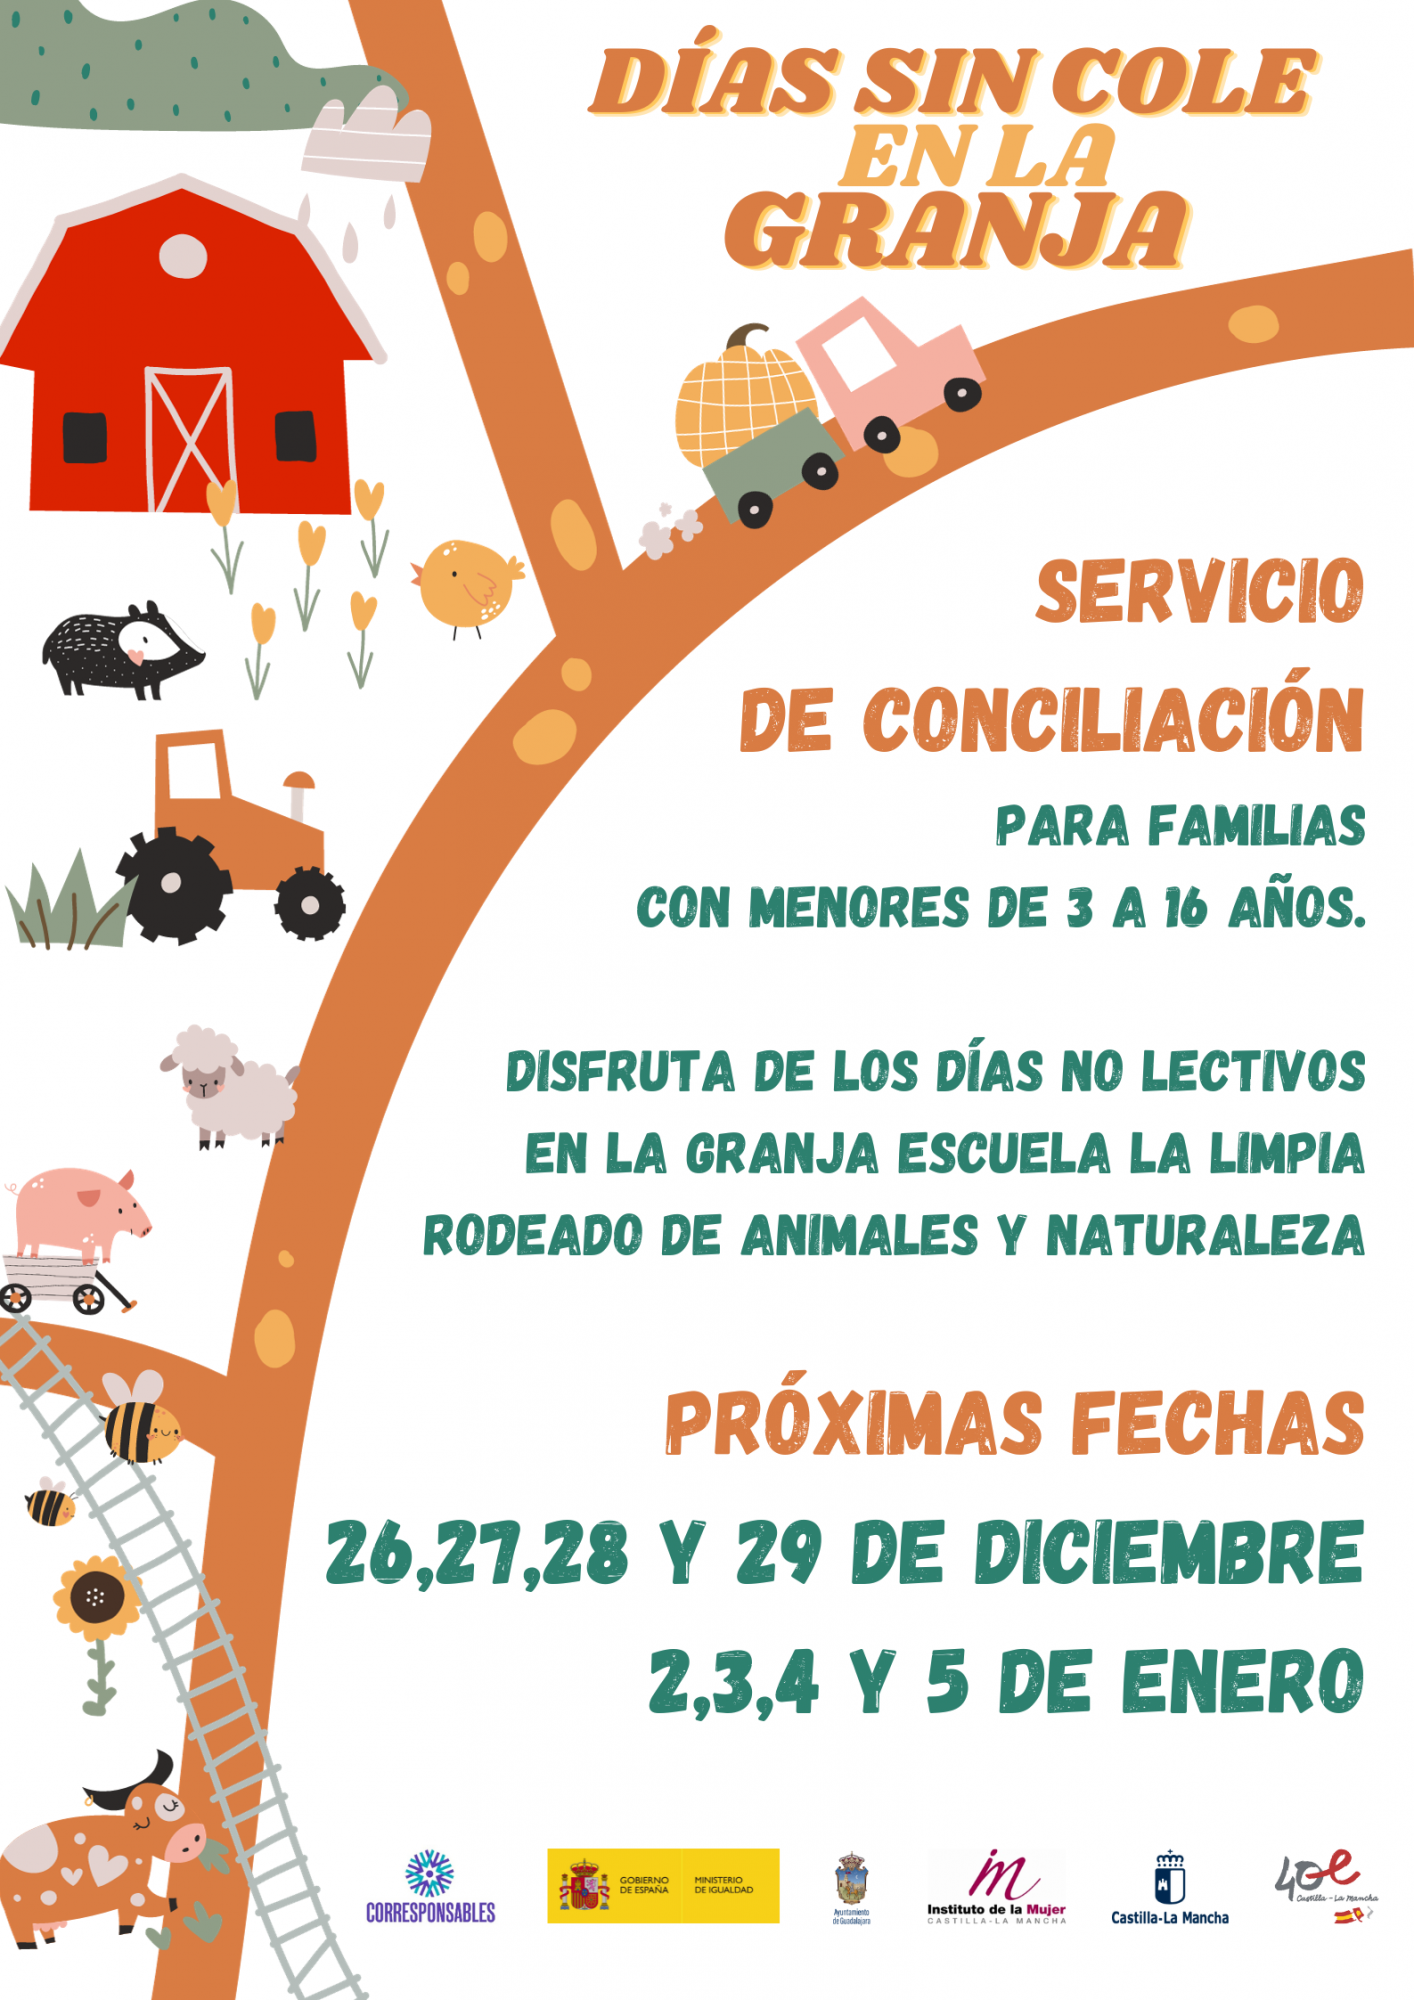 Se abre el plazo de inscripción para ‘Días sin cole en La Granja’ durante estas Navidades en Guadalajara